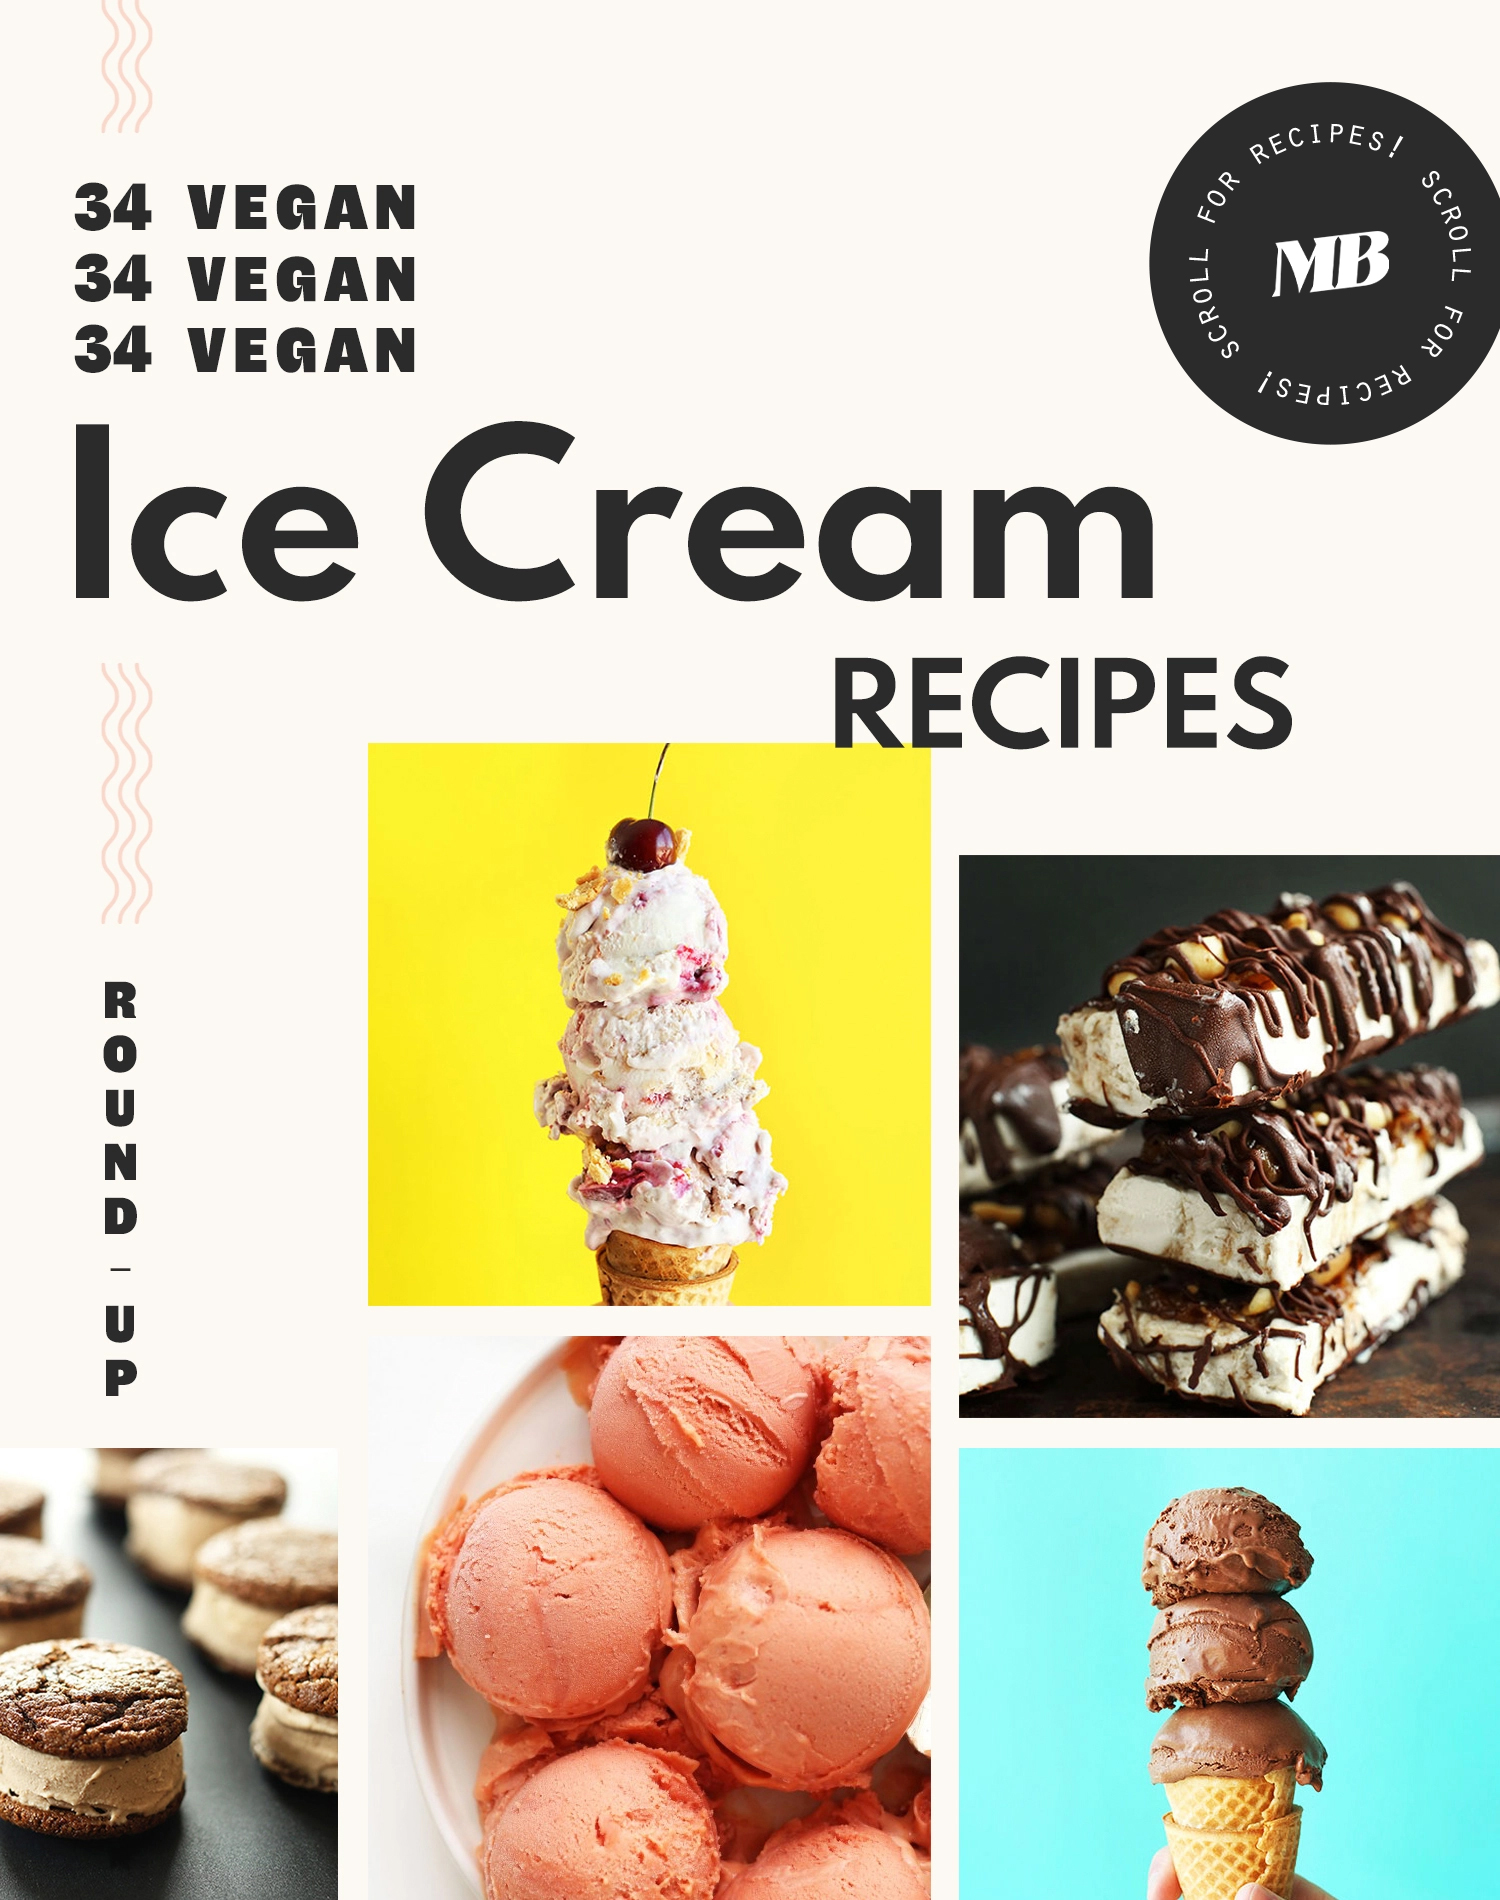 Assortment of vegan ice cream recipes